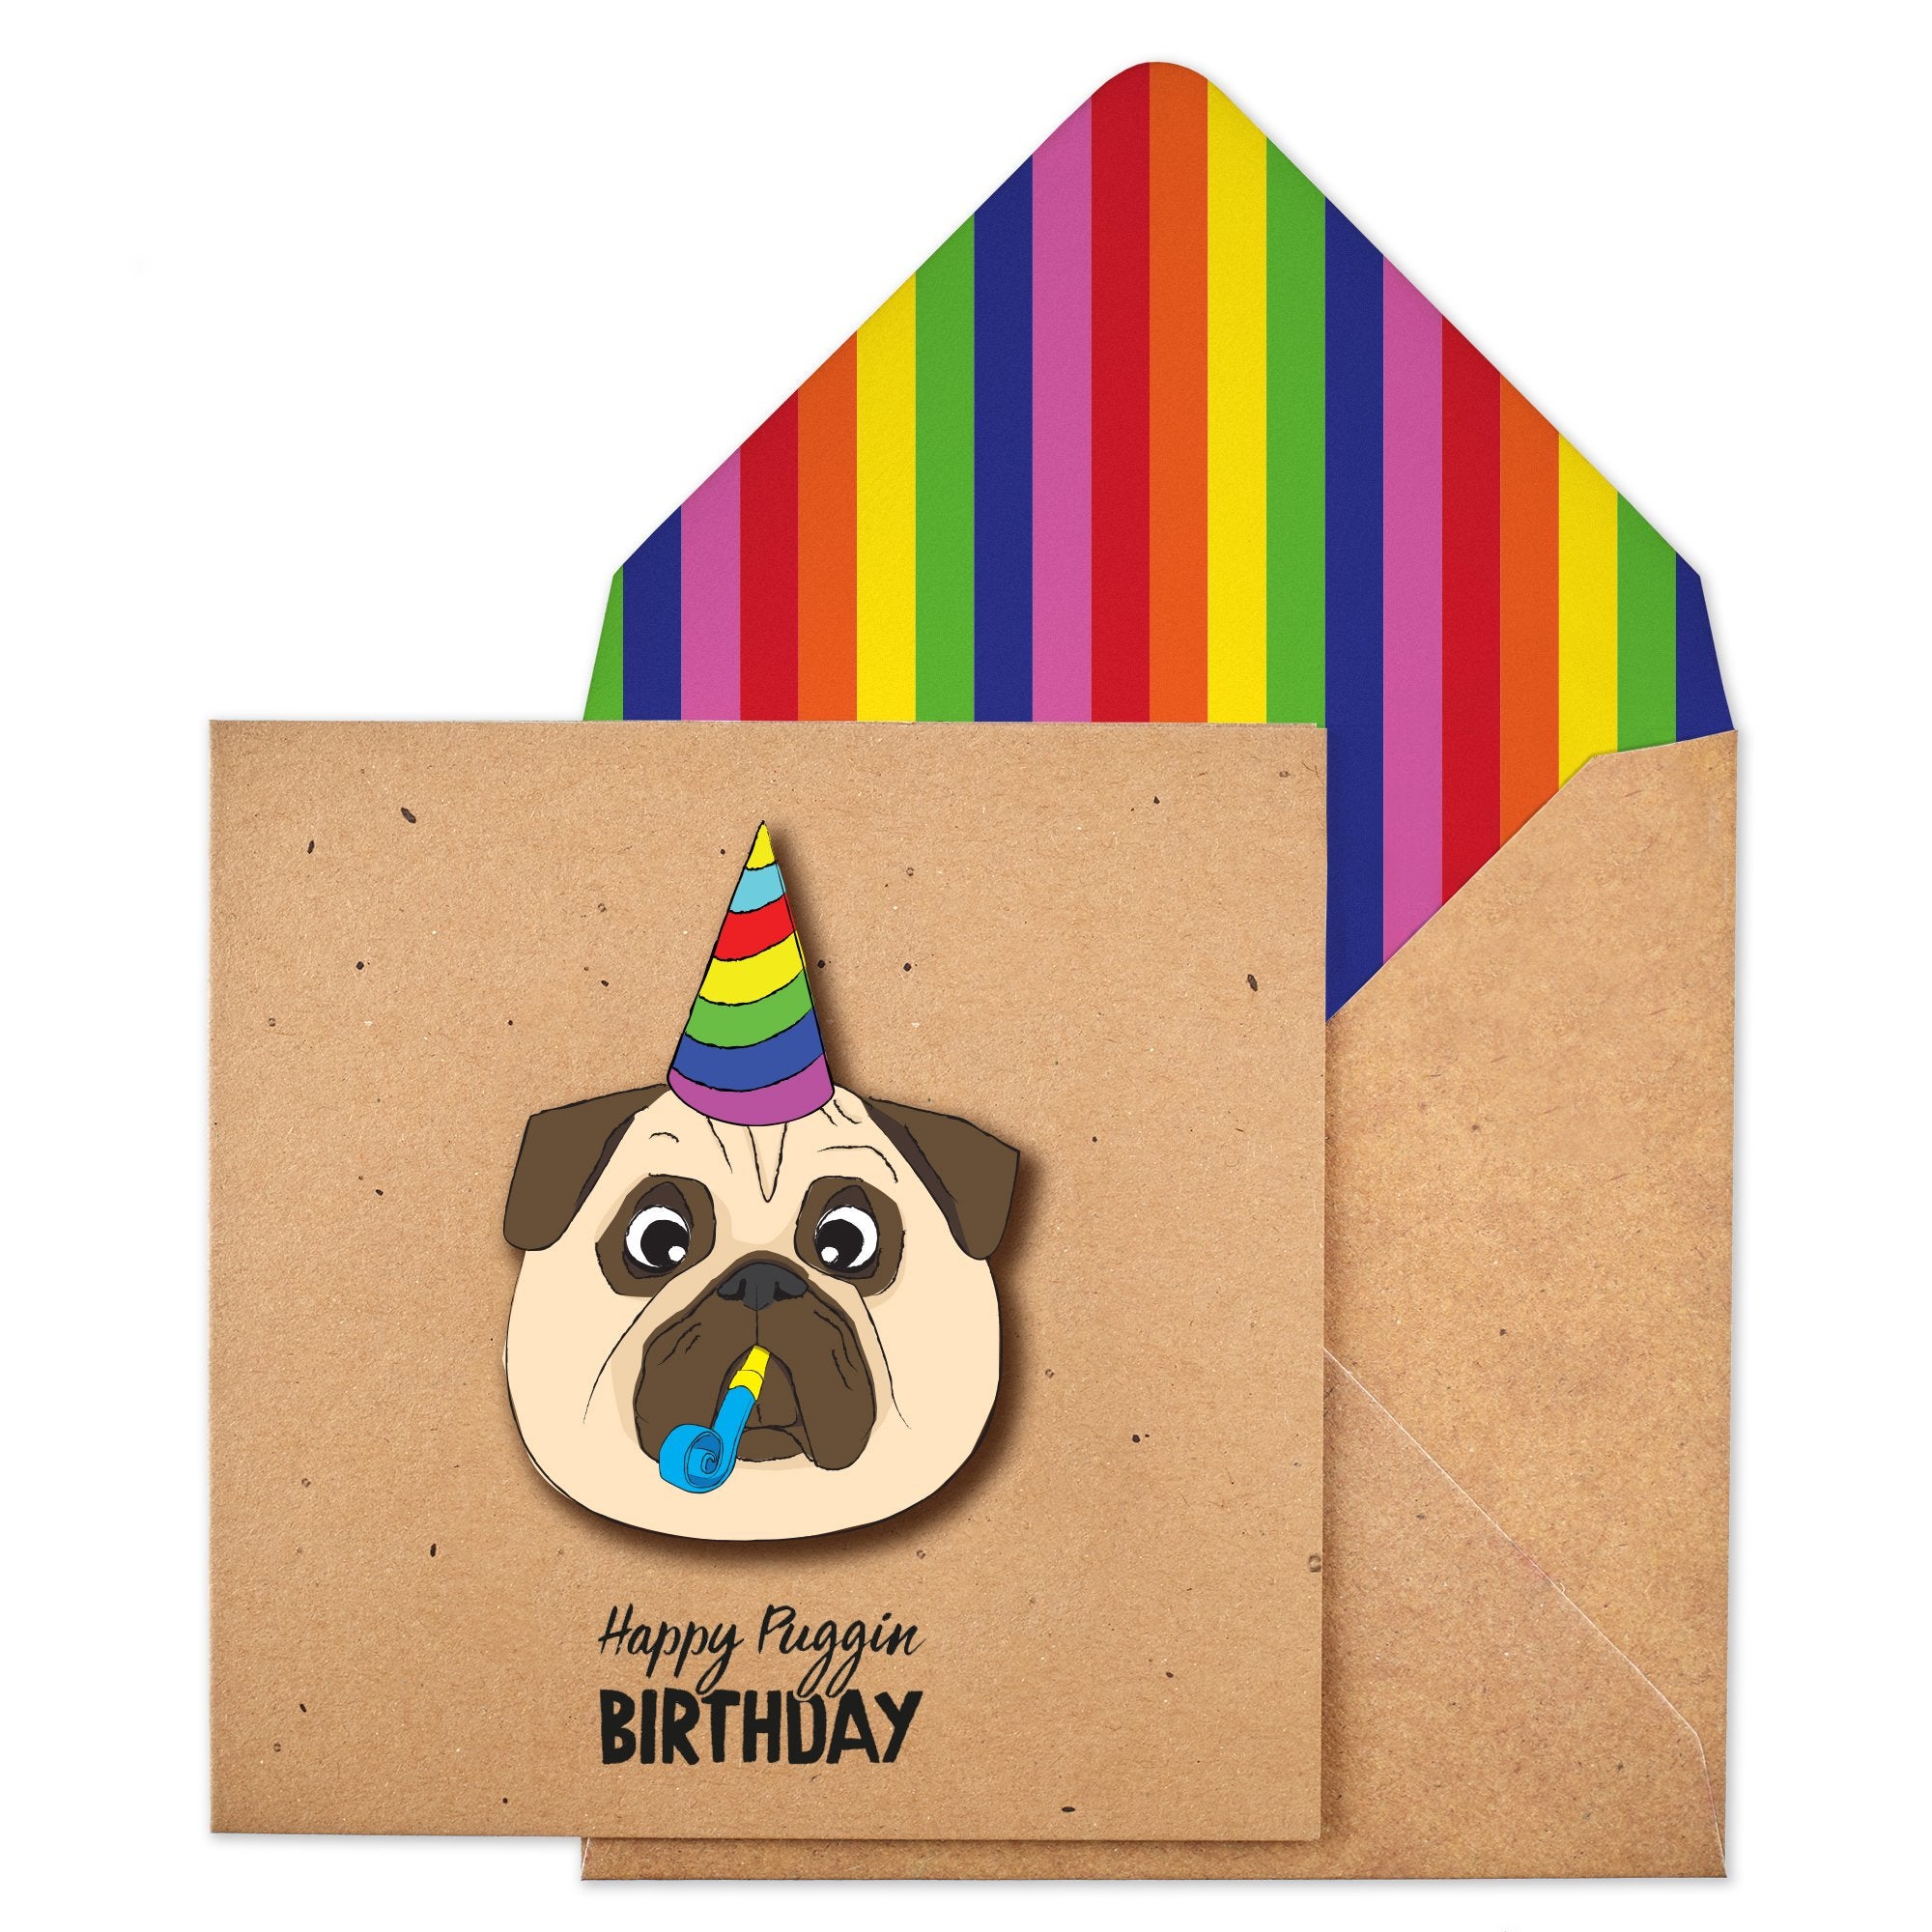 Have a Puggin Birthday' - TACHE Trade